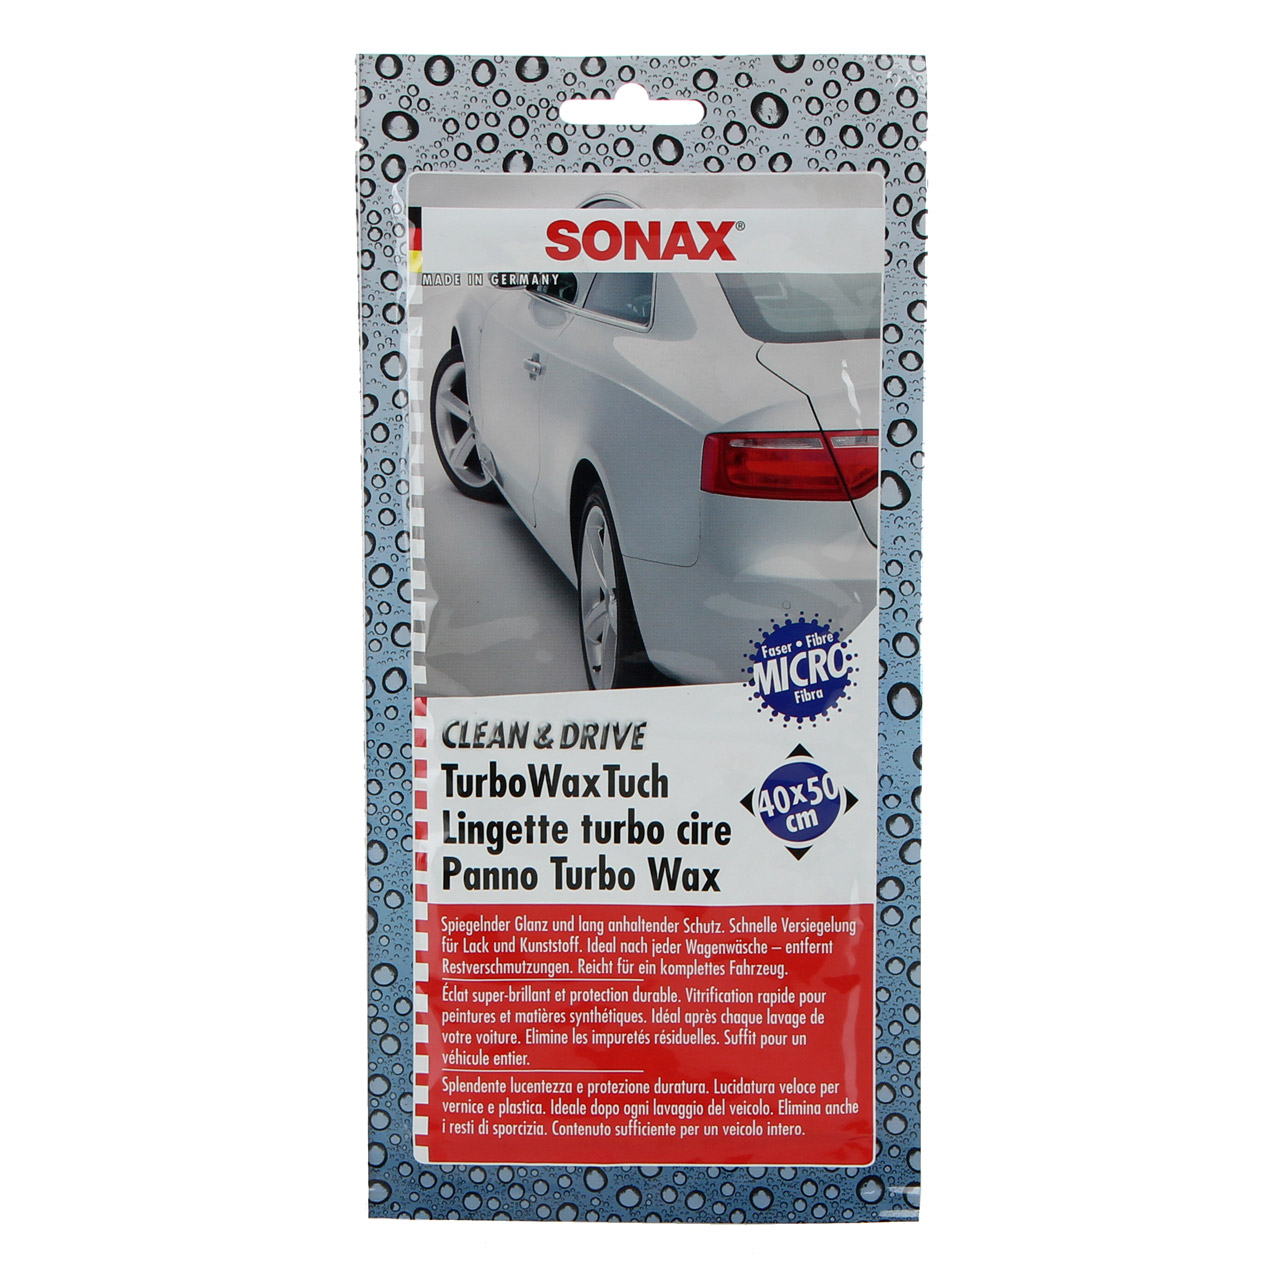 SONAX 414000 TurboWaxTuch CLEAN & DRIVE Wachstuch 40x50cm